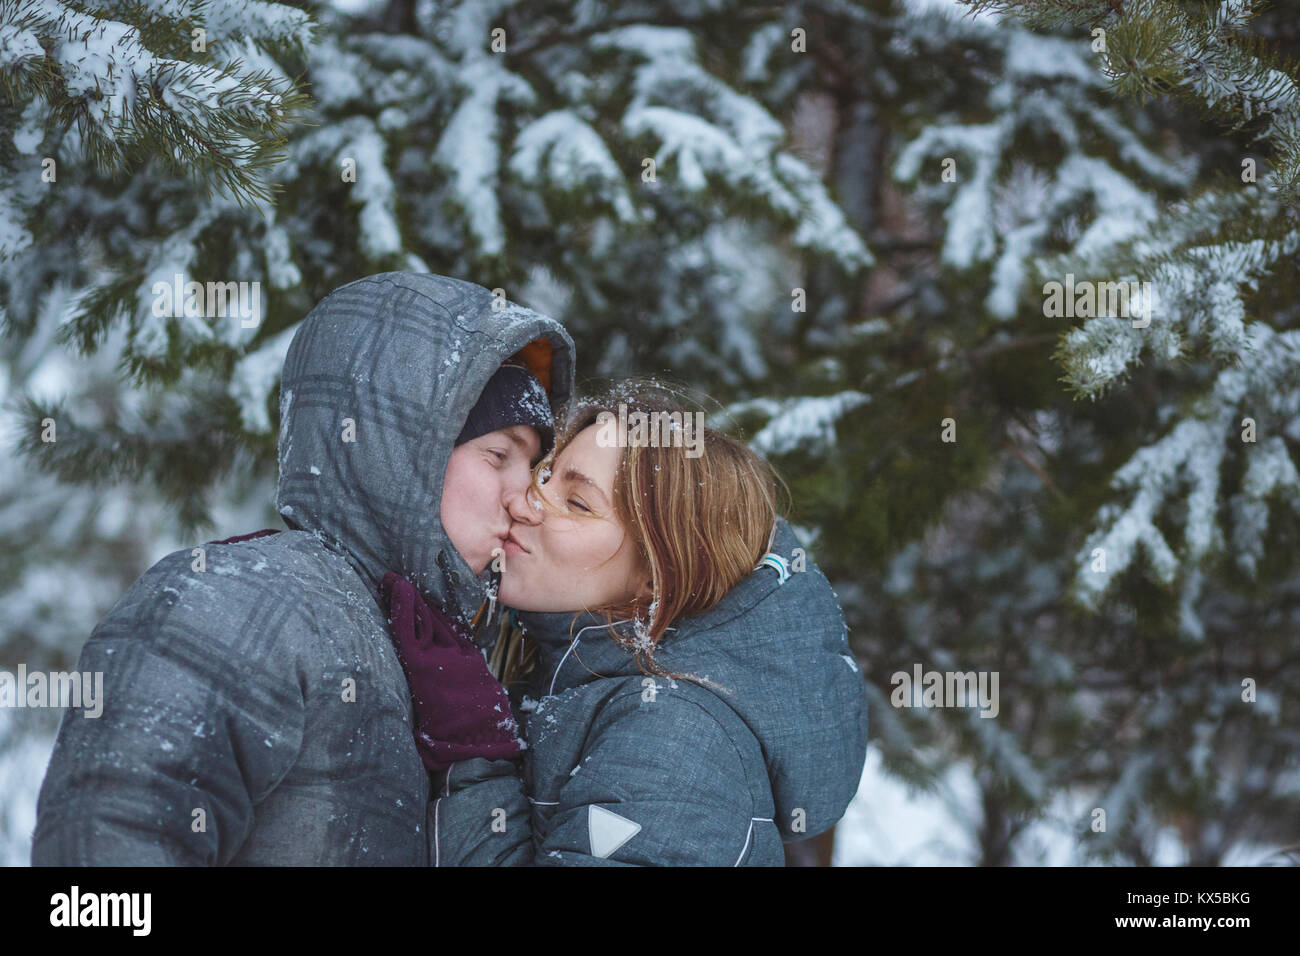 Gerne Schnee paar Küssen unter Tannenzweigen im Winter Wald. Konzept gesunde romantischen Urlaub an der frischen Luft Stockfoto